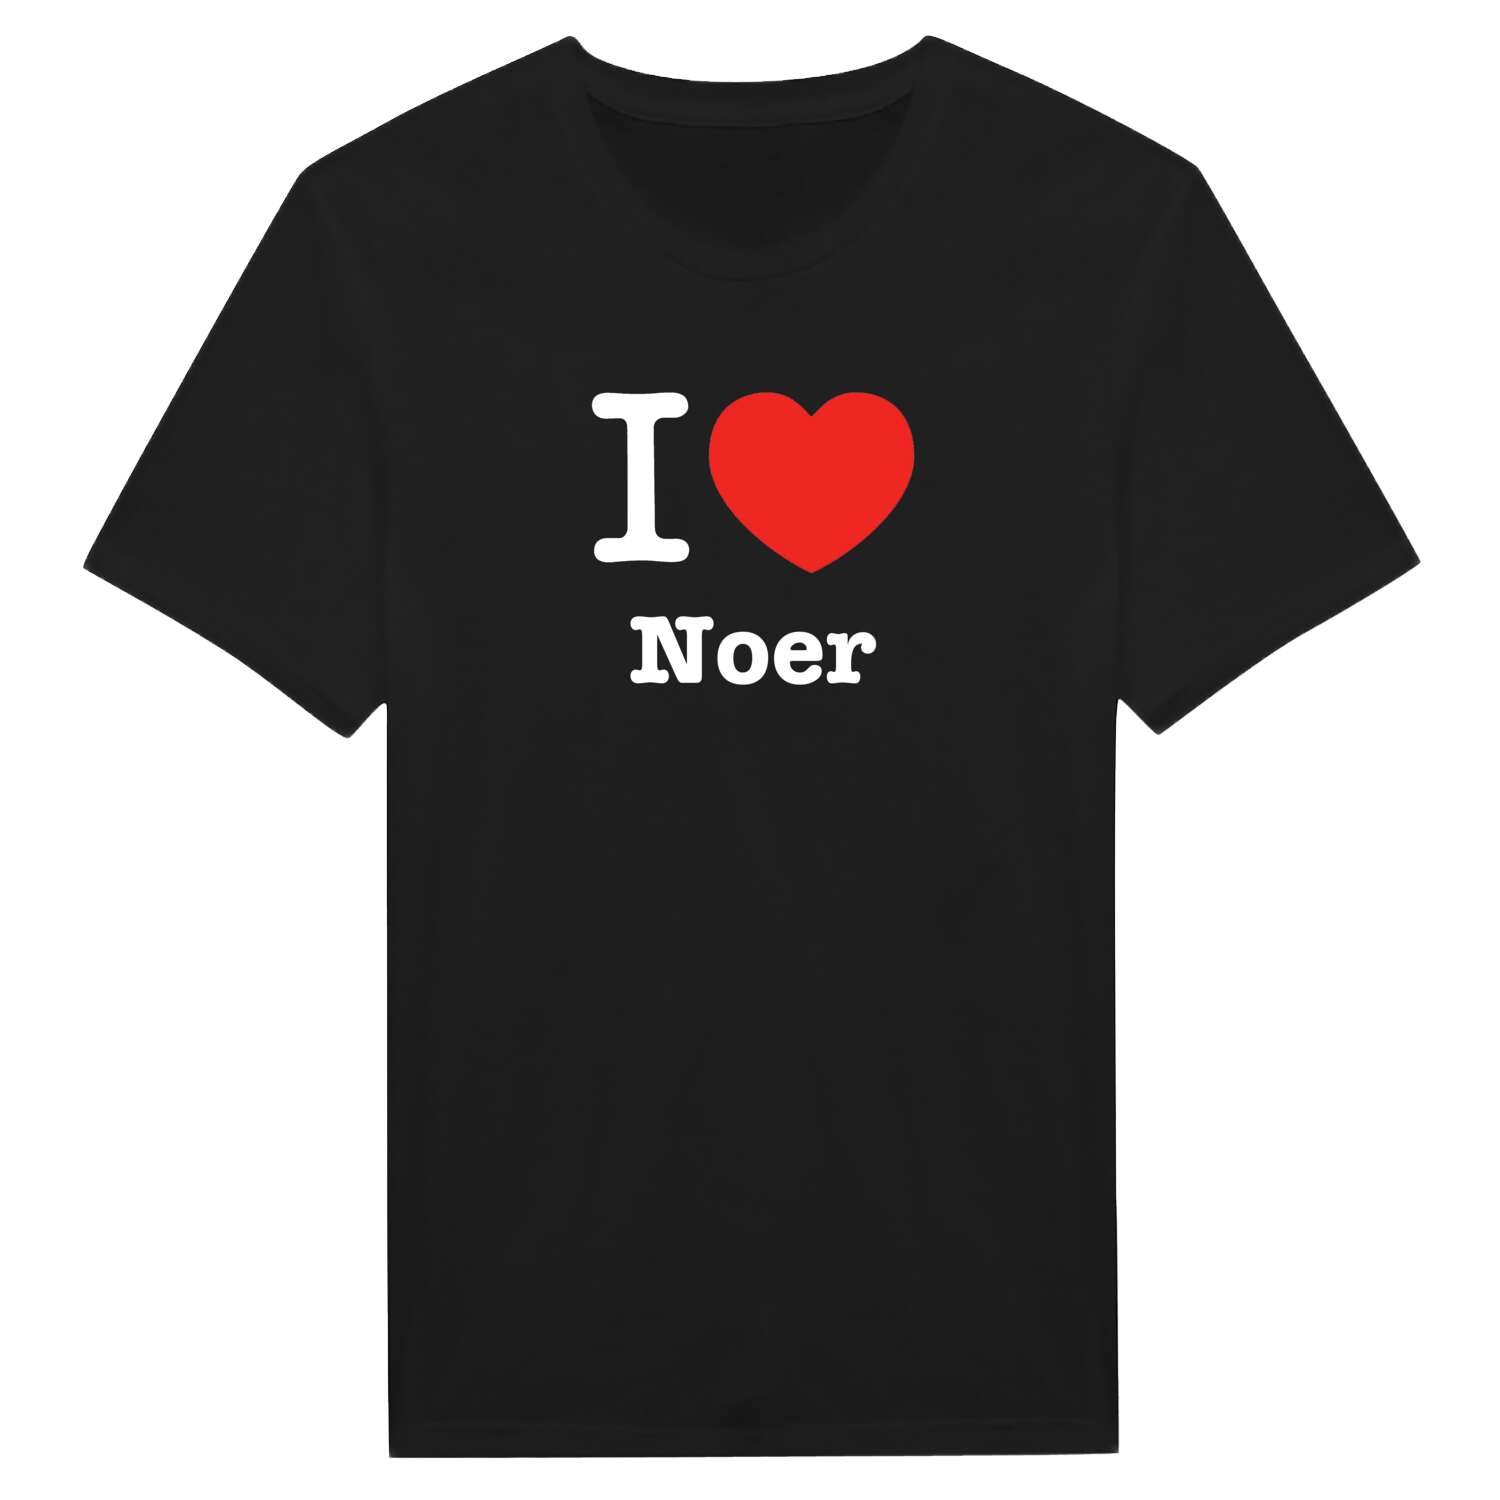 Noer T-Shirt »I love«